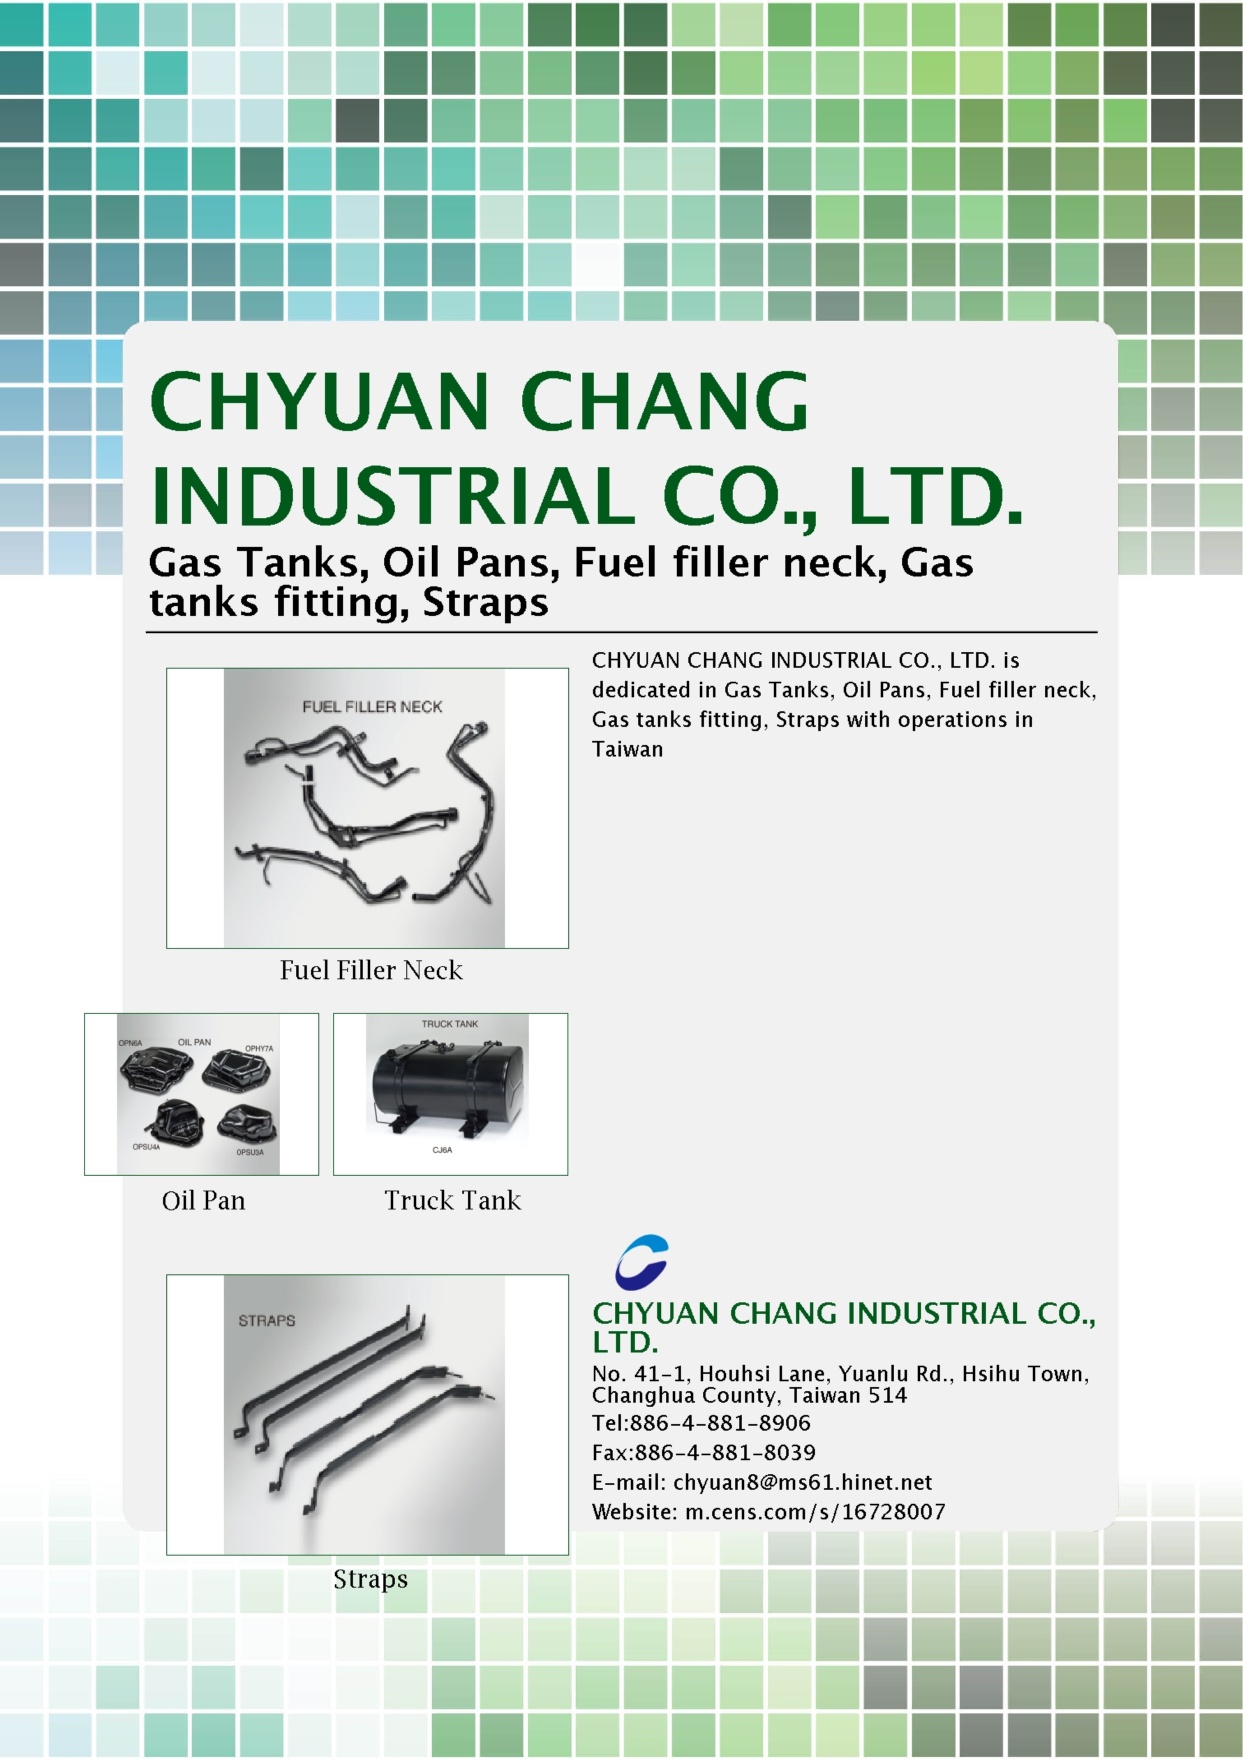 CHYUAN CHANG INDUSTRIAL CO., LTD.